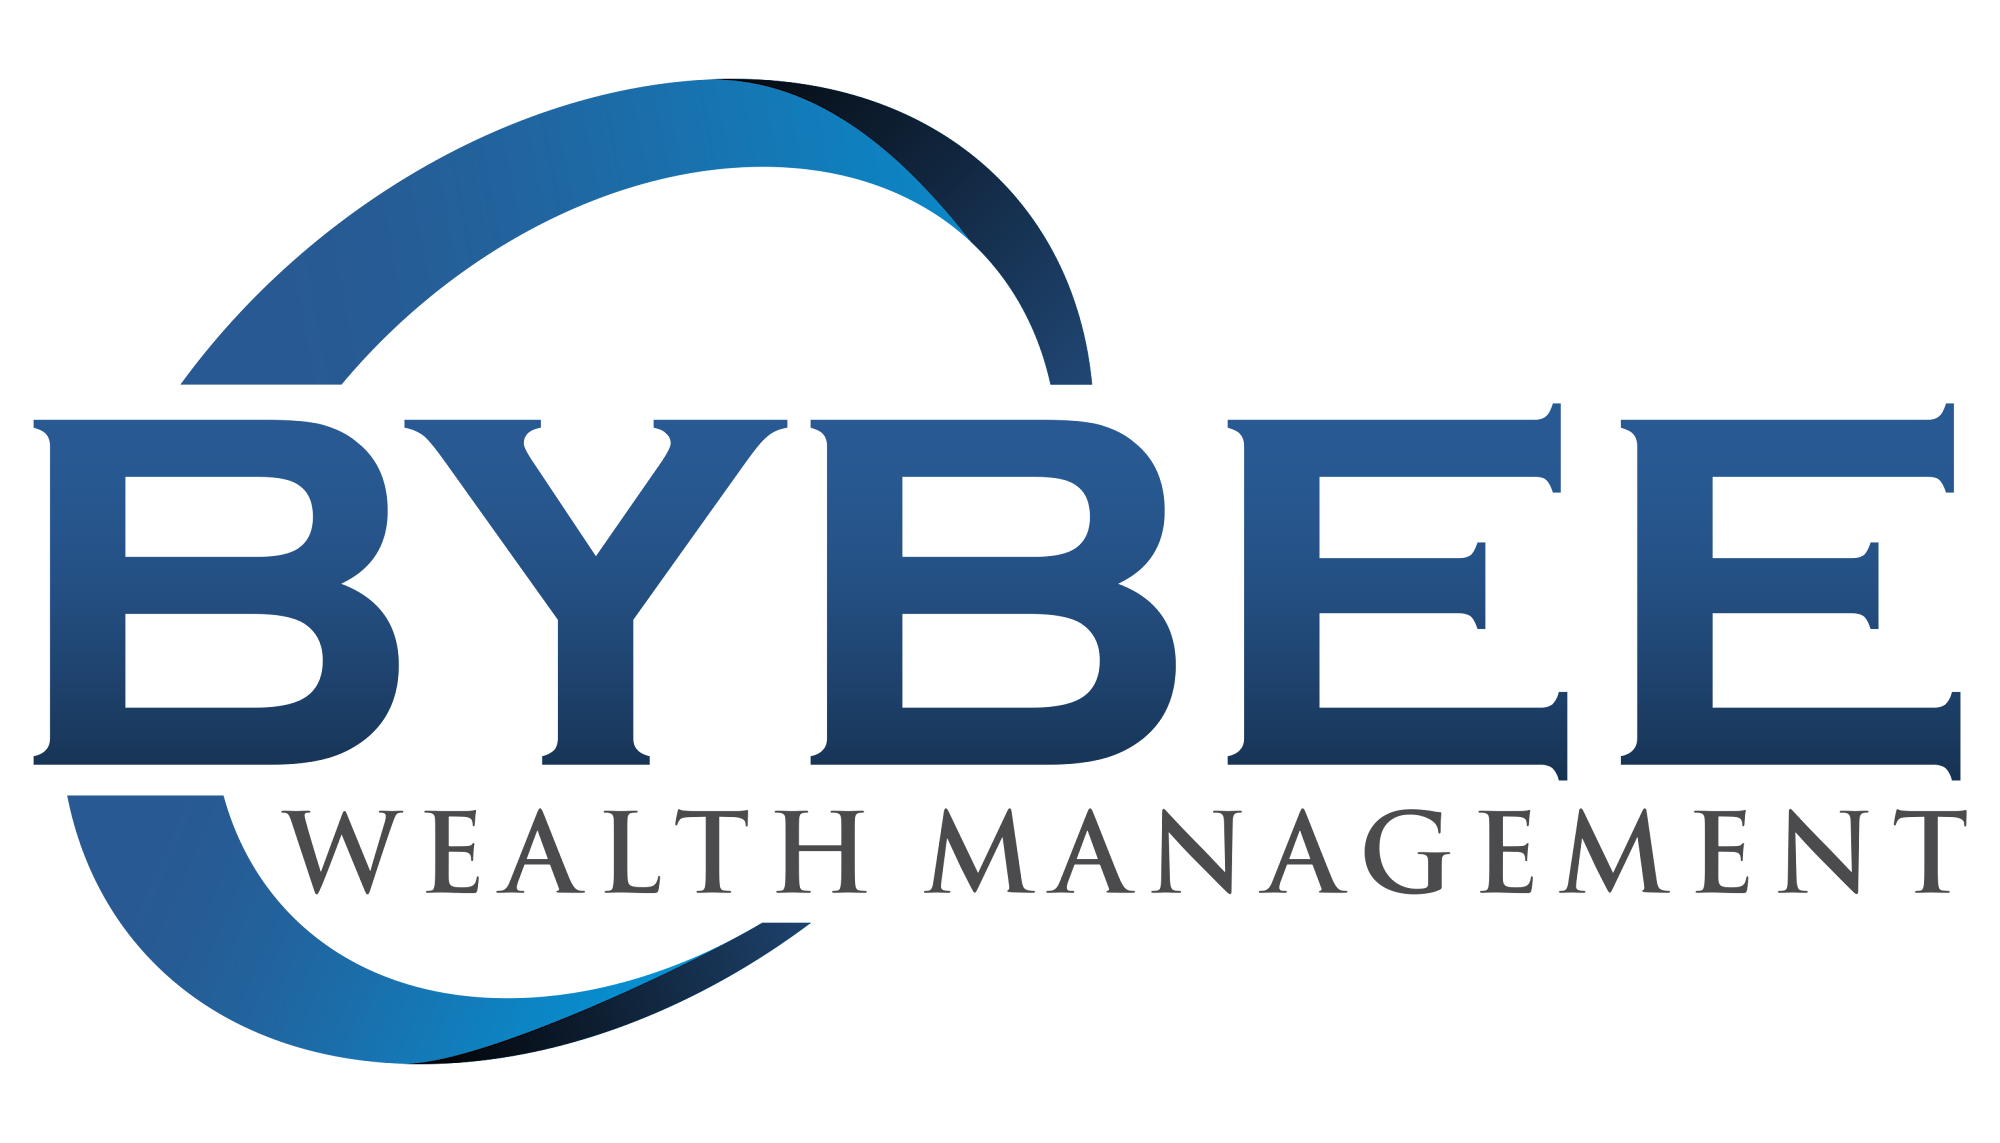 Bybee Wealth Management 2245 Prevedel Dr, West Haven Utah 84401